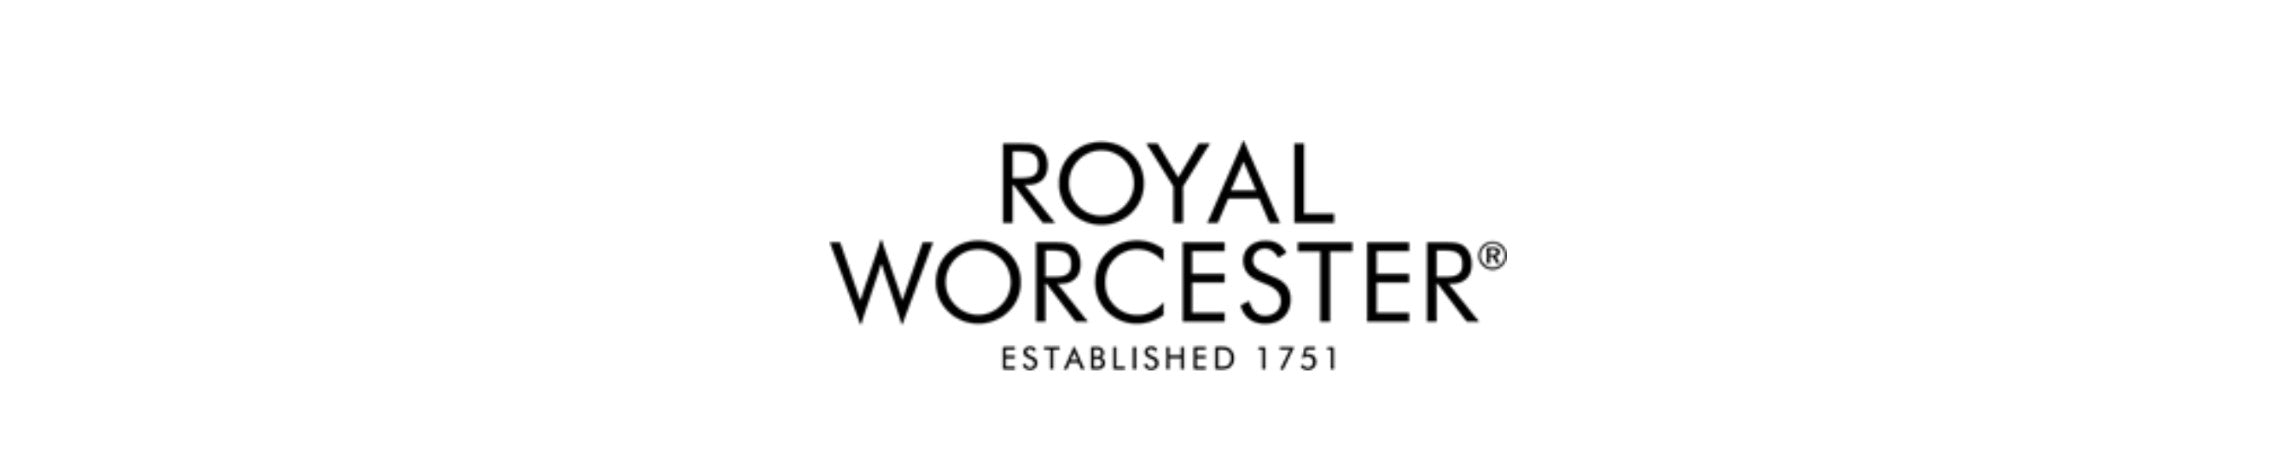 Royal Worcester established 1751